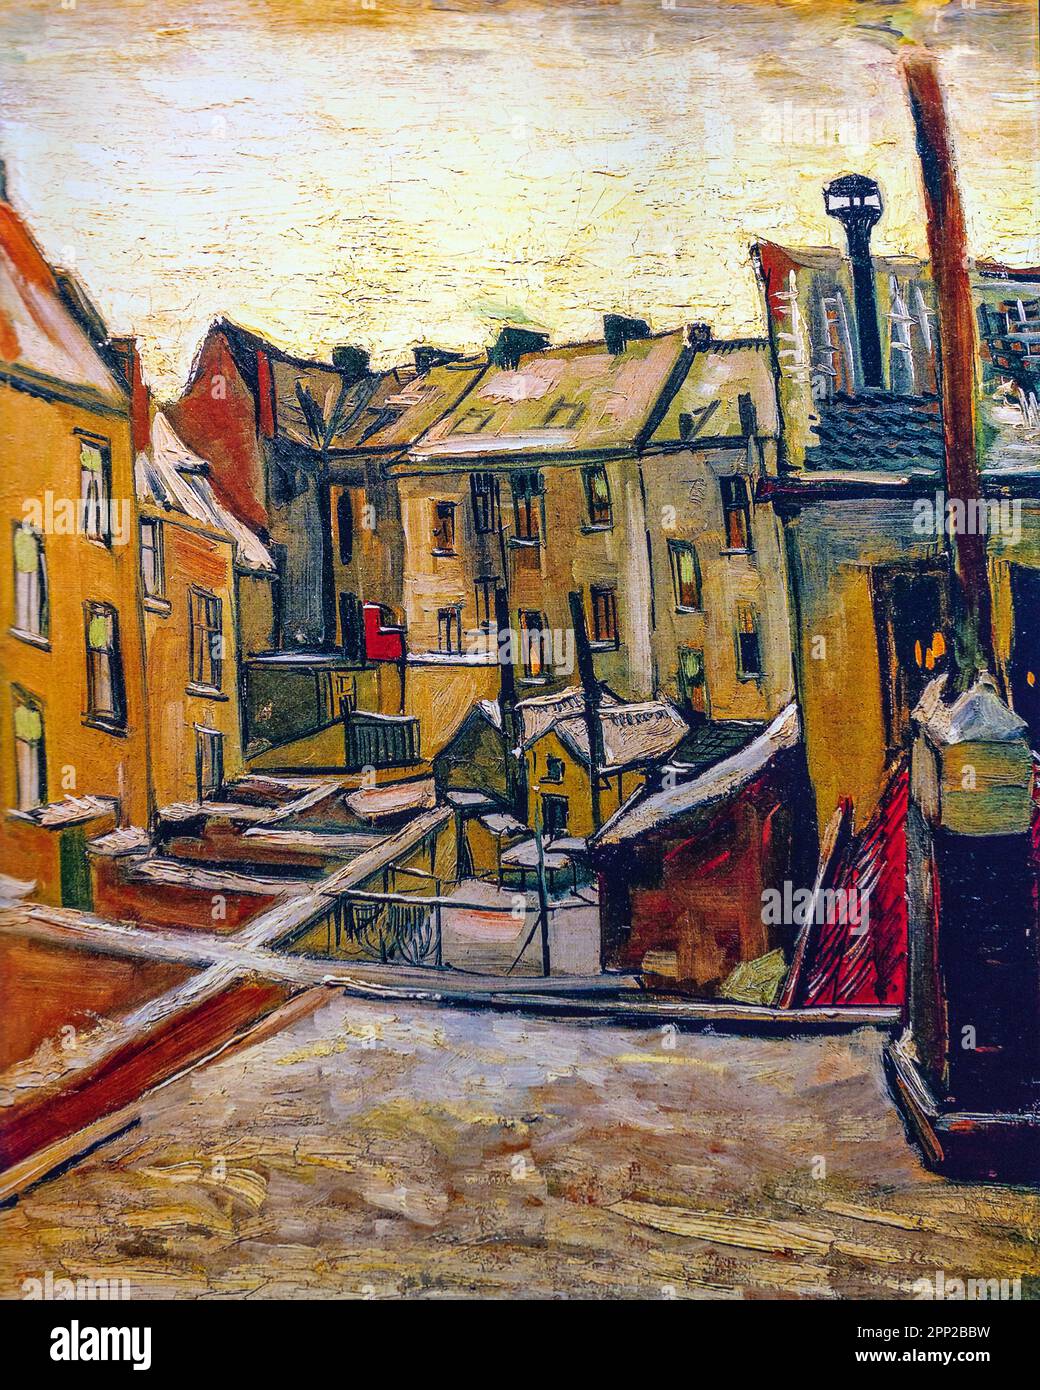 Häuser von hinten gesehen, Antwerpen, Belgien, Vincent Van Gogh Gemälde. Stockfoto